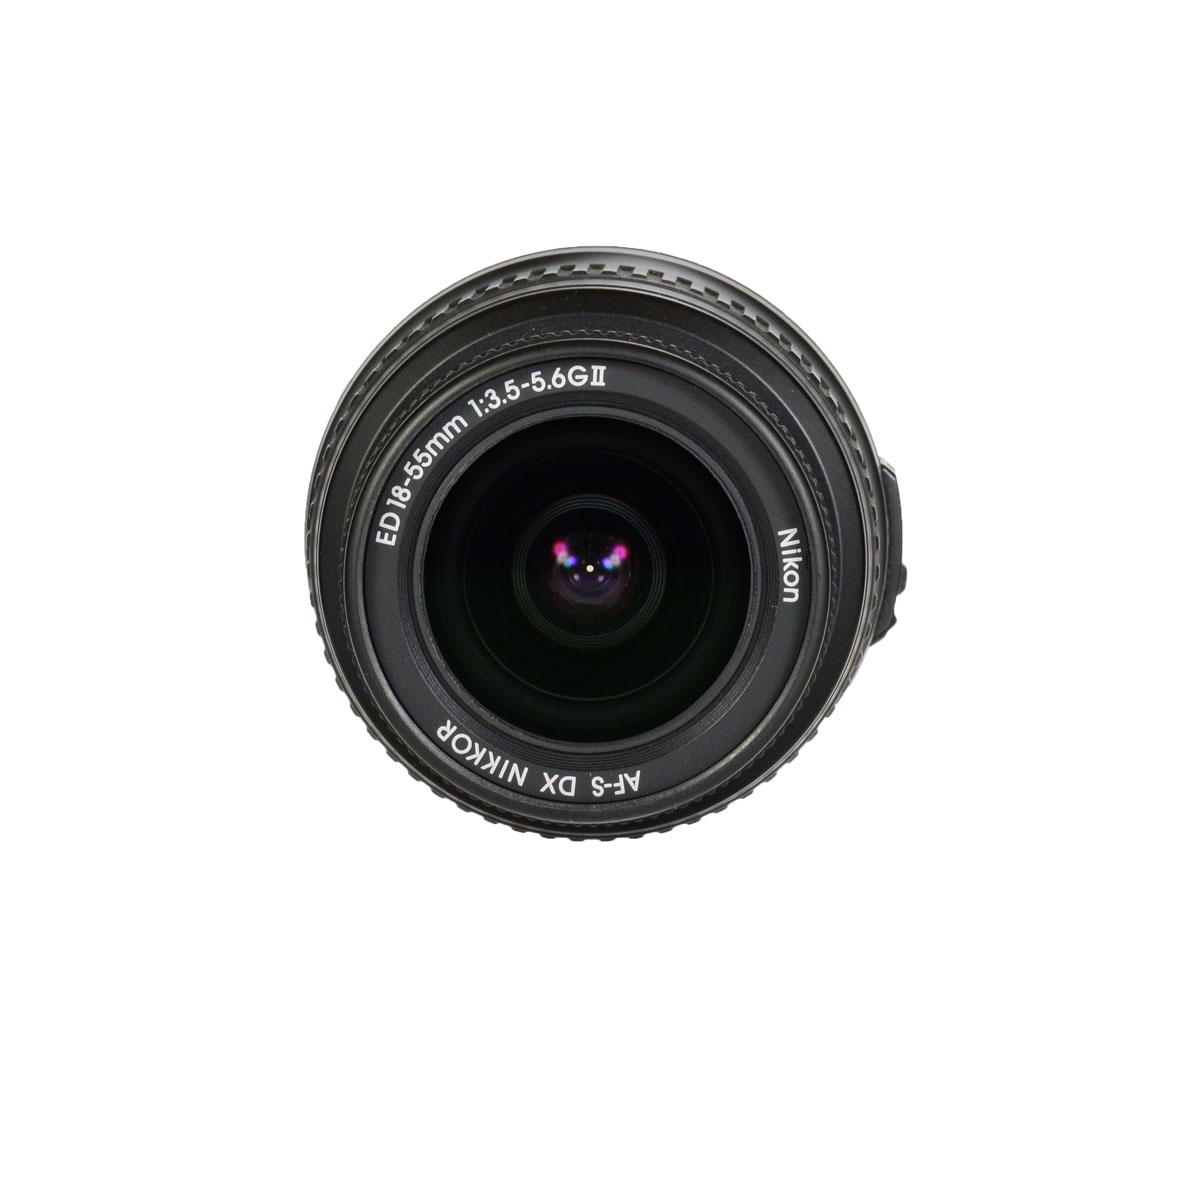 Nikon 18-55mm f/3.5-5.6G II AF-S DX б/у